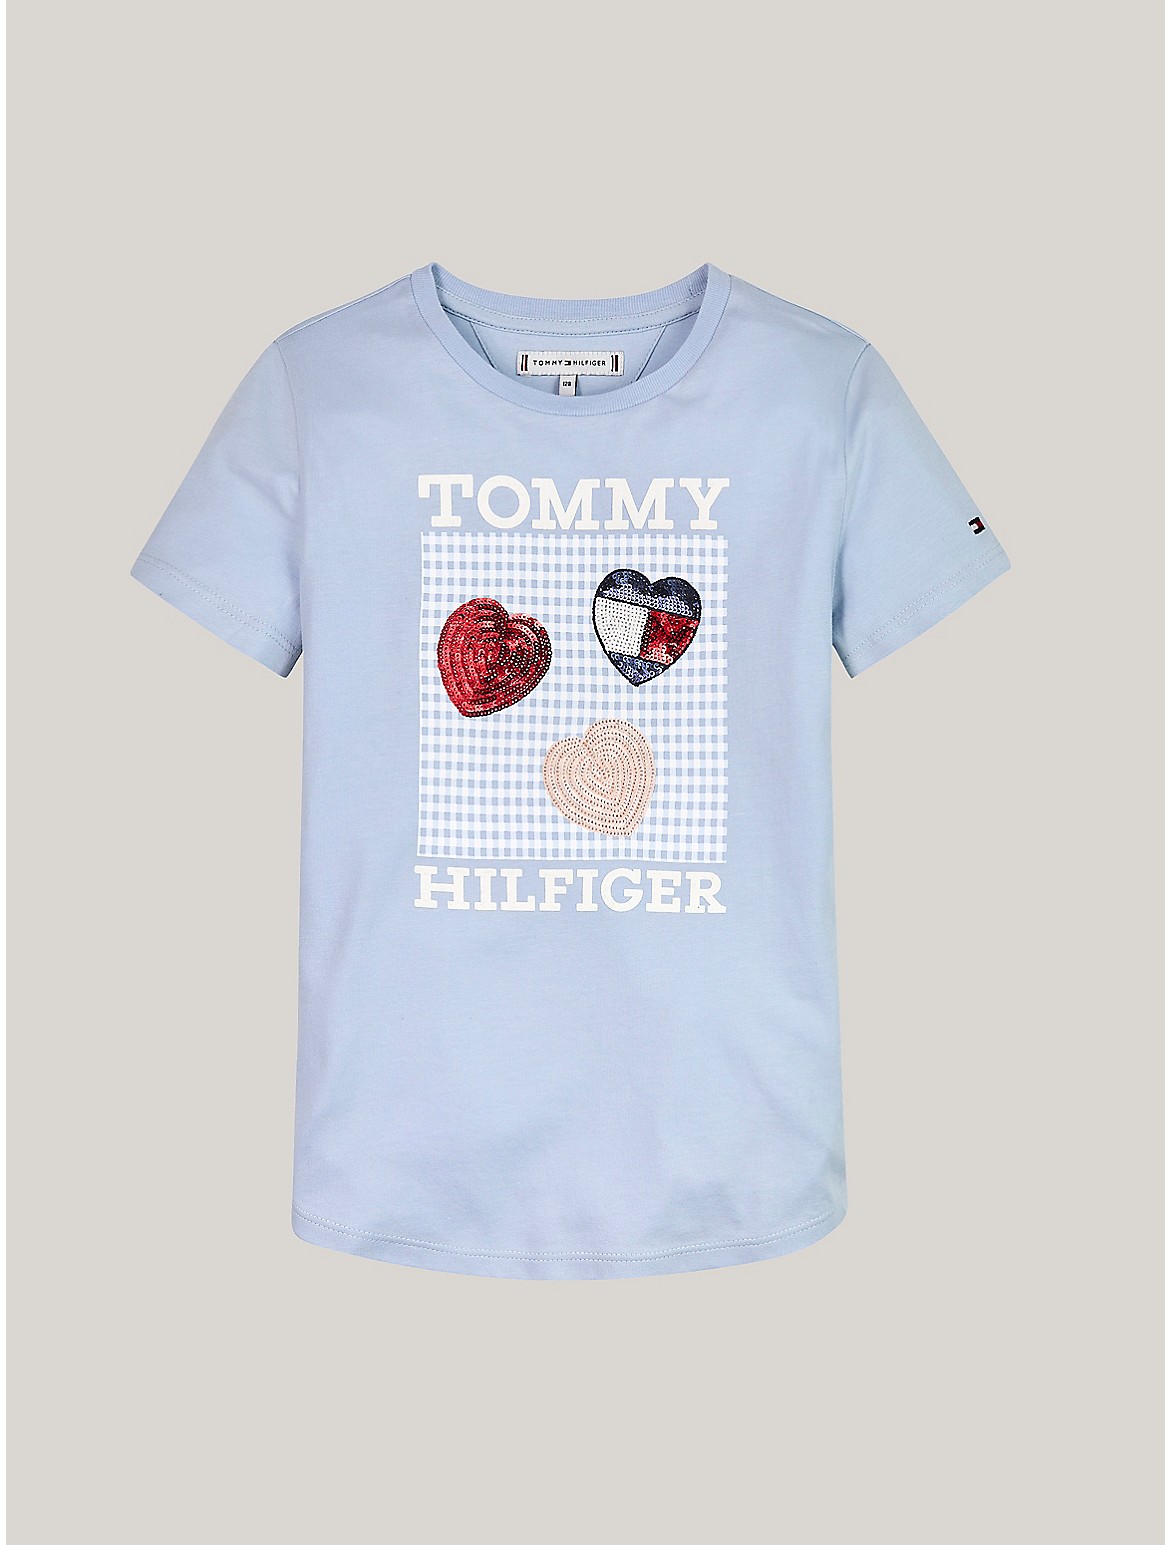 Tommy Hilfiger Girls' Kids' Hilfiger Heart Sequin T-Shirt